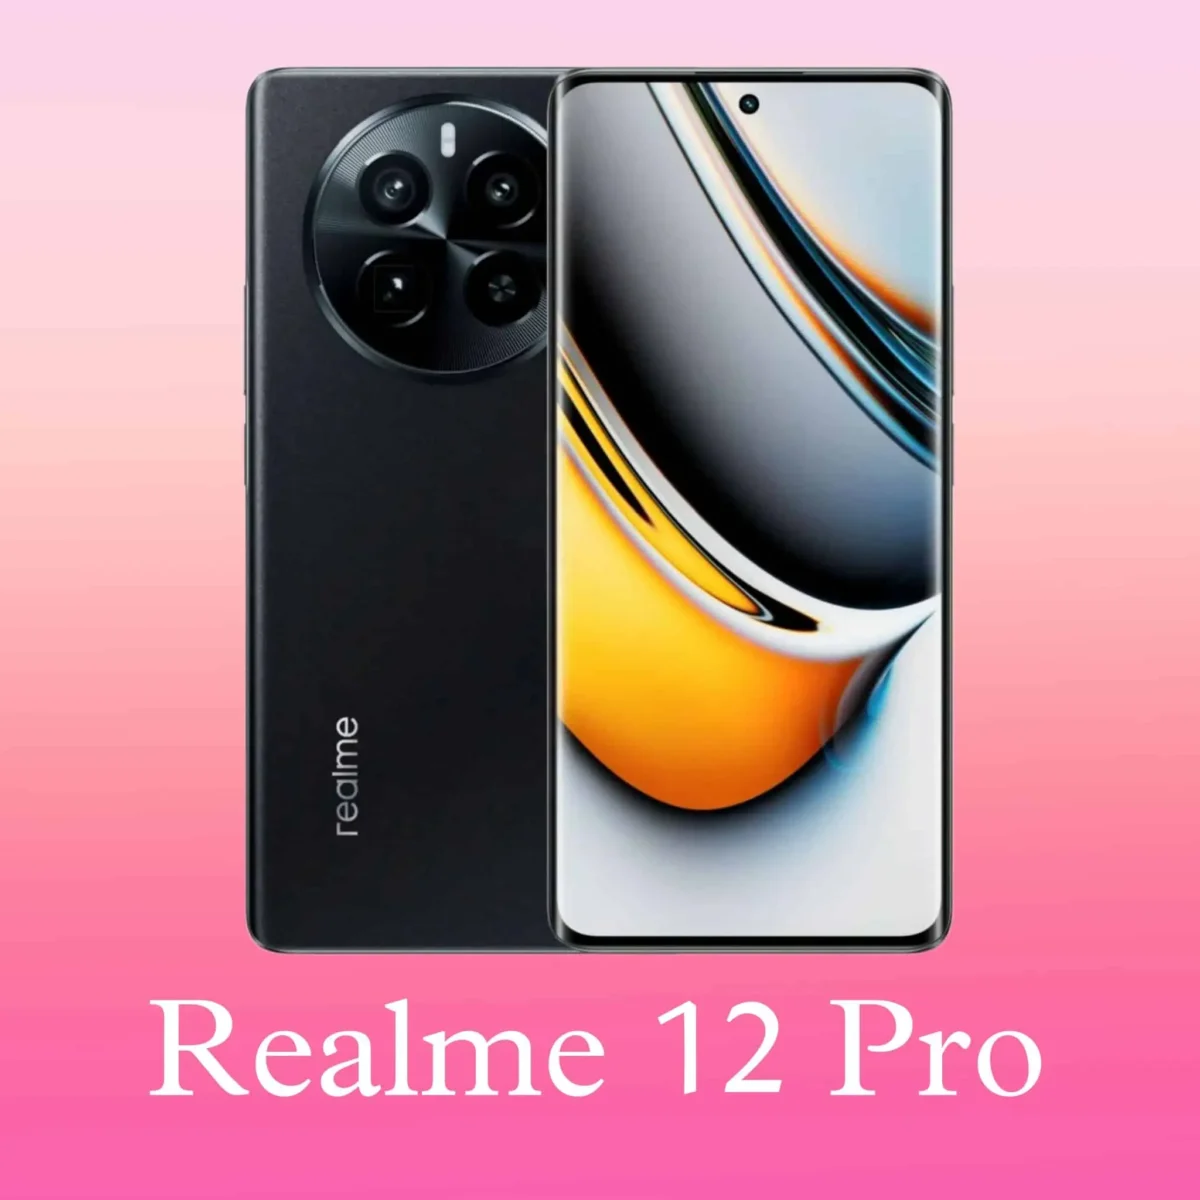 Realme 12 Pro Release Date Realme 12 Pro Images, Realme 12 Pro Photos, Realme 12 Pro 5G Price, Realme 12 Pro 5G 200Mp Camera, Realme 12 Pro 5G Flipkart, Realme 12 Pro 5G Phone, Realme 12 Pro 5G, Realme 12 Pro 5G Processor, Realme 12 Pro 5G Gsmarena, Realme 12 Pro 5G Review, Realme 12 Pro 5G 6 128 Price In India, Realme 12 Pro 5G Antutu Score,